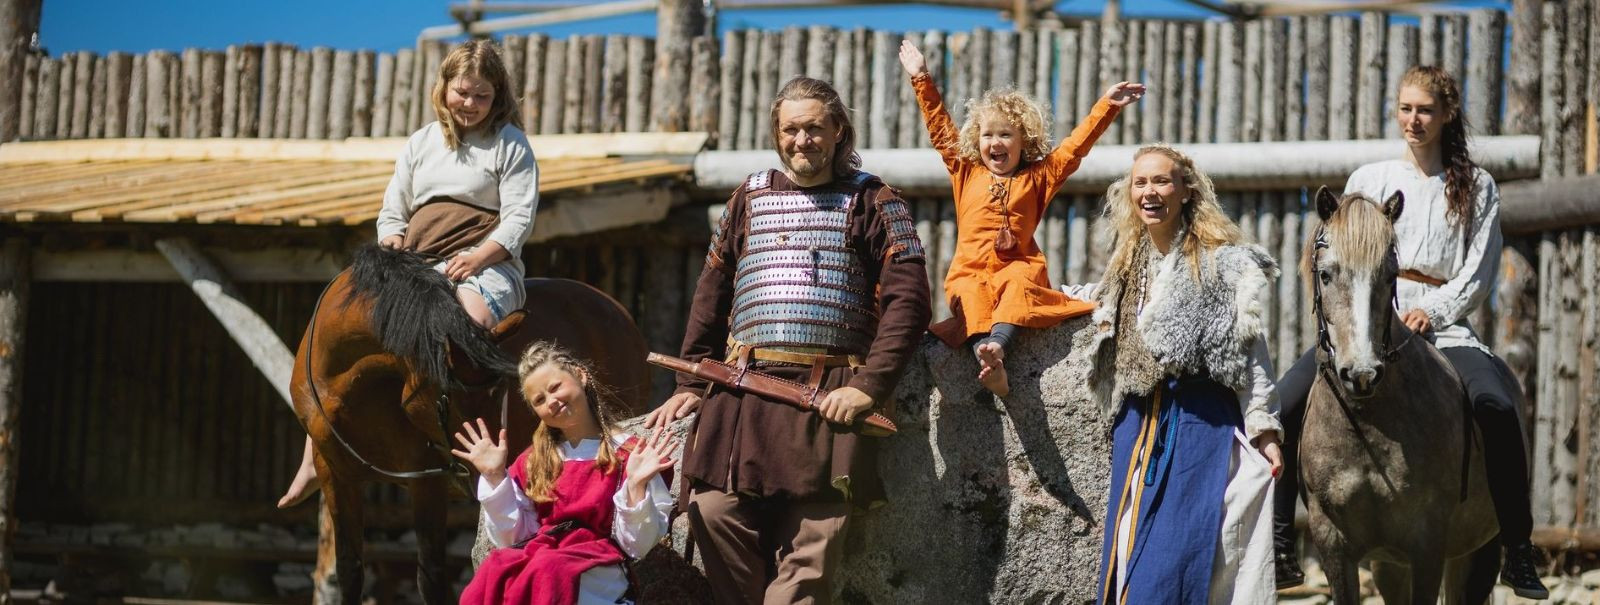 Tere tulemast kuningriiki, kus mineviku kajad kohtuvad seiklusvaimuga - Saaremaa Viikingid OÜ. Asva Viikingiküla, mis asub Saaremaa südames, pole lihtsalt sihtk